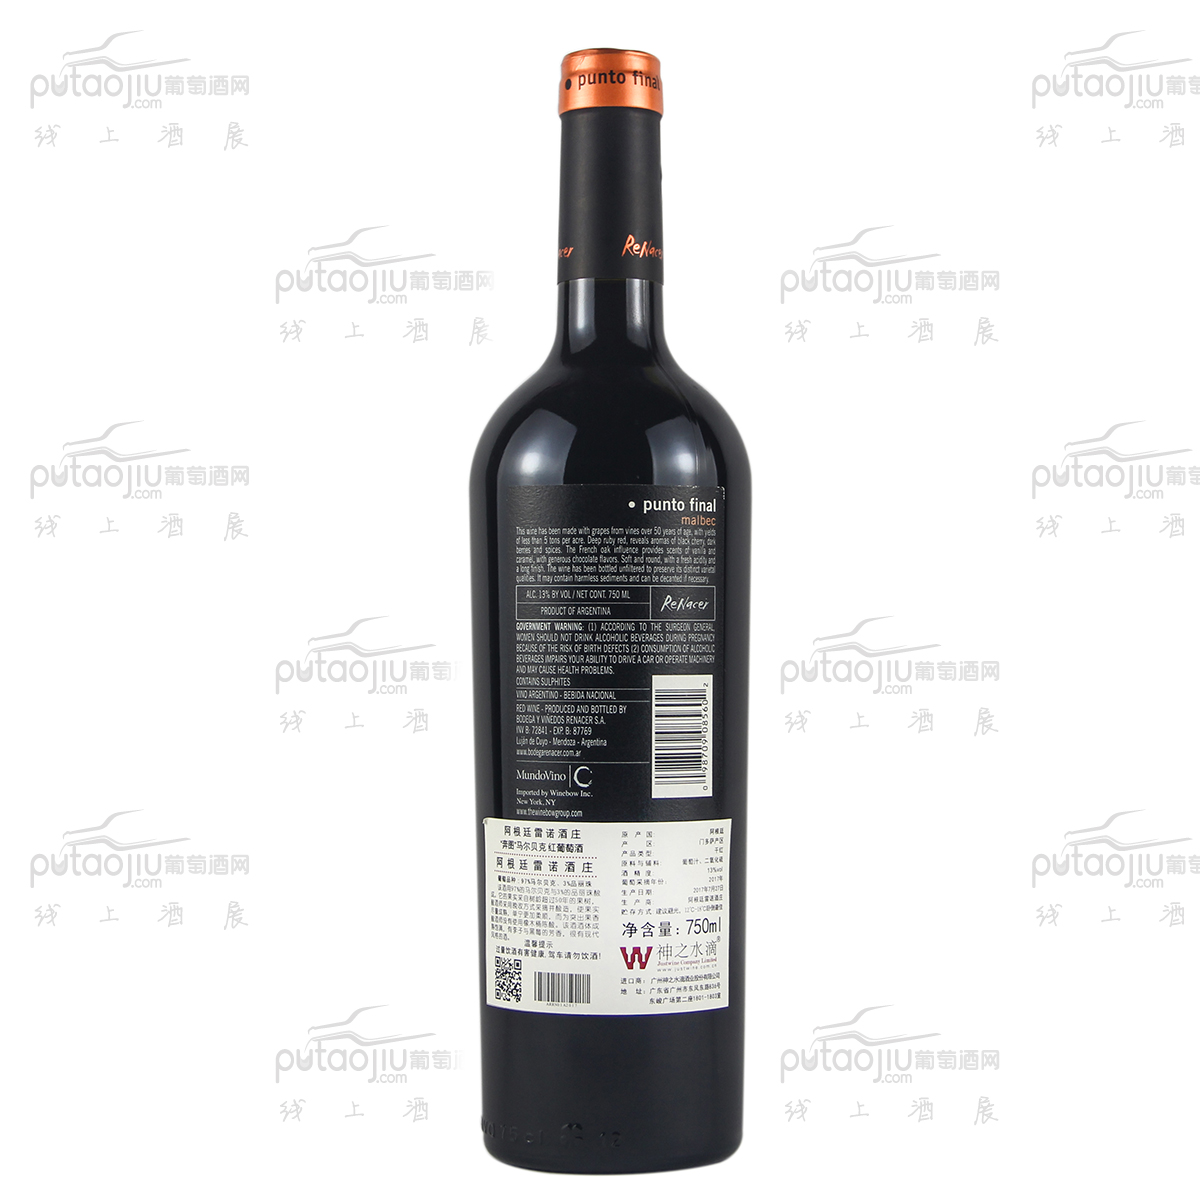 阿根廷门多萨省雷诺庄园“奔图”马尔贝克经典干红葡萄酒